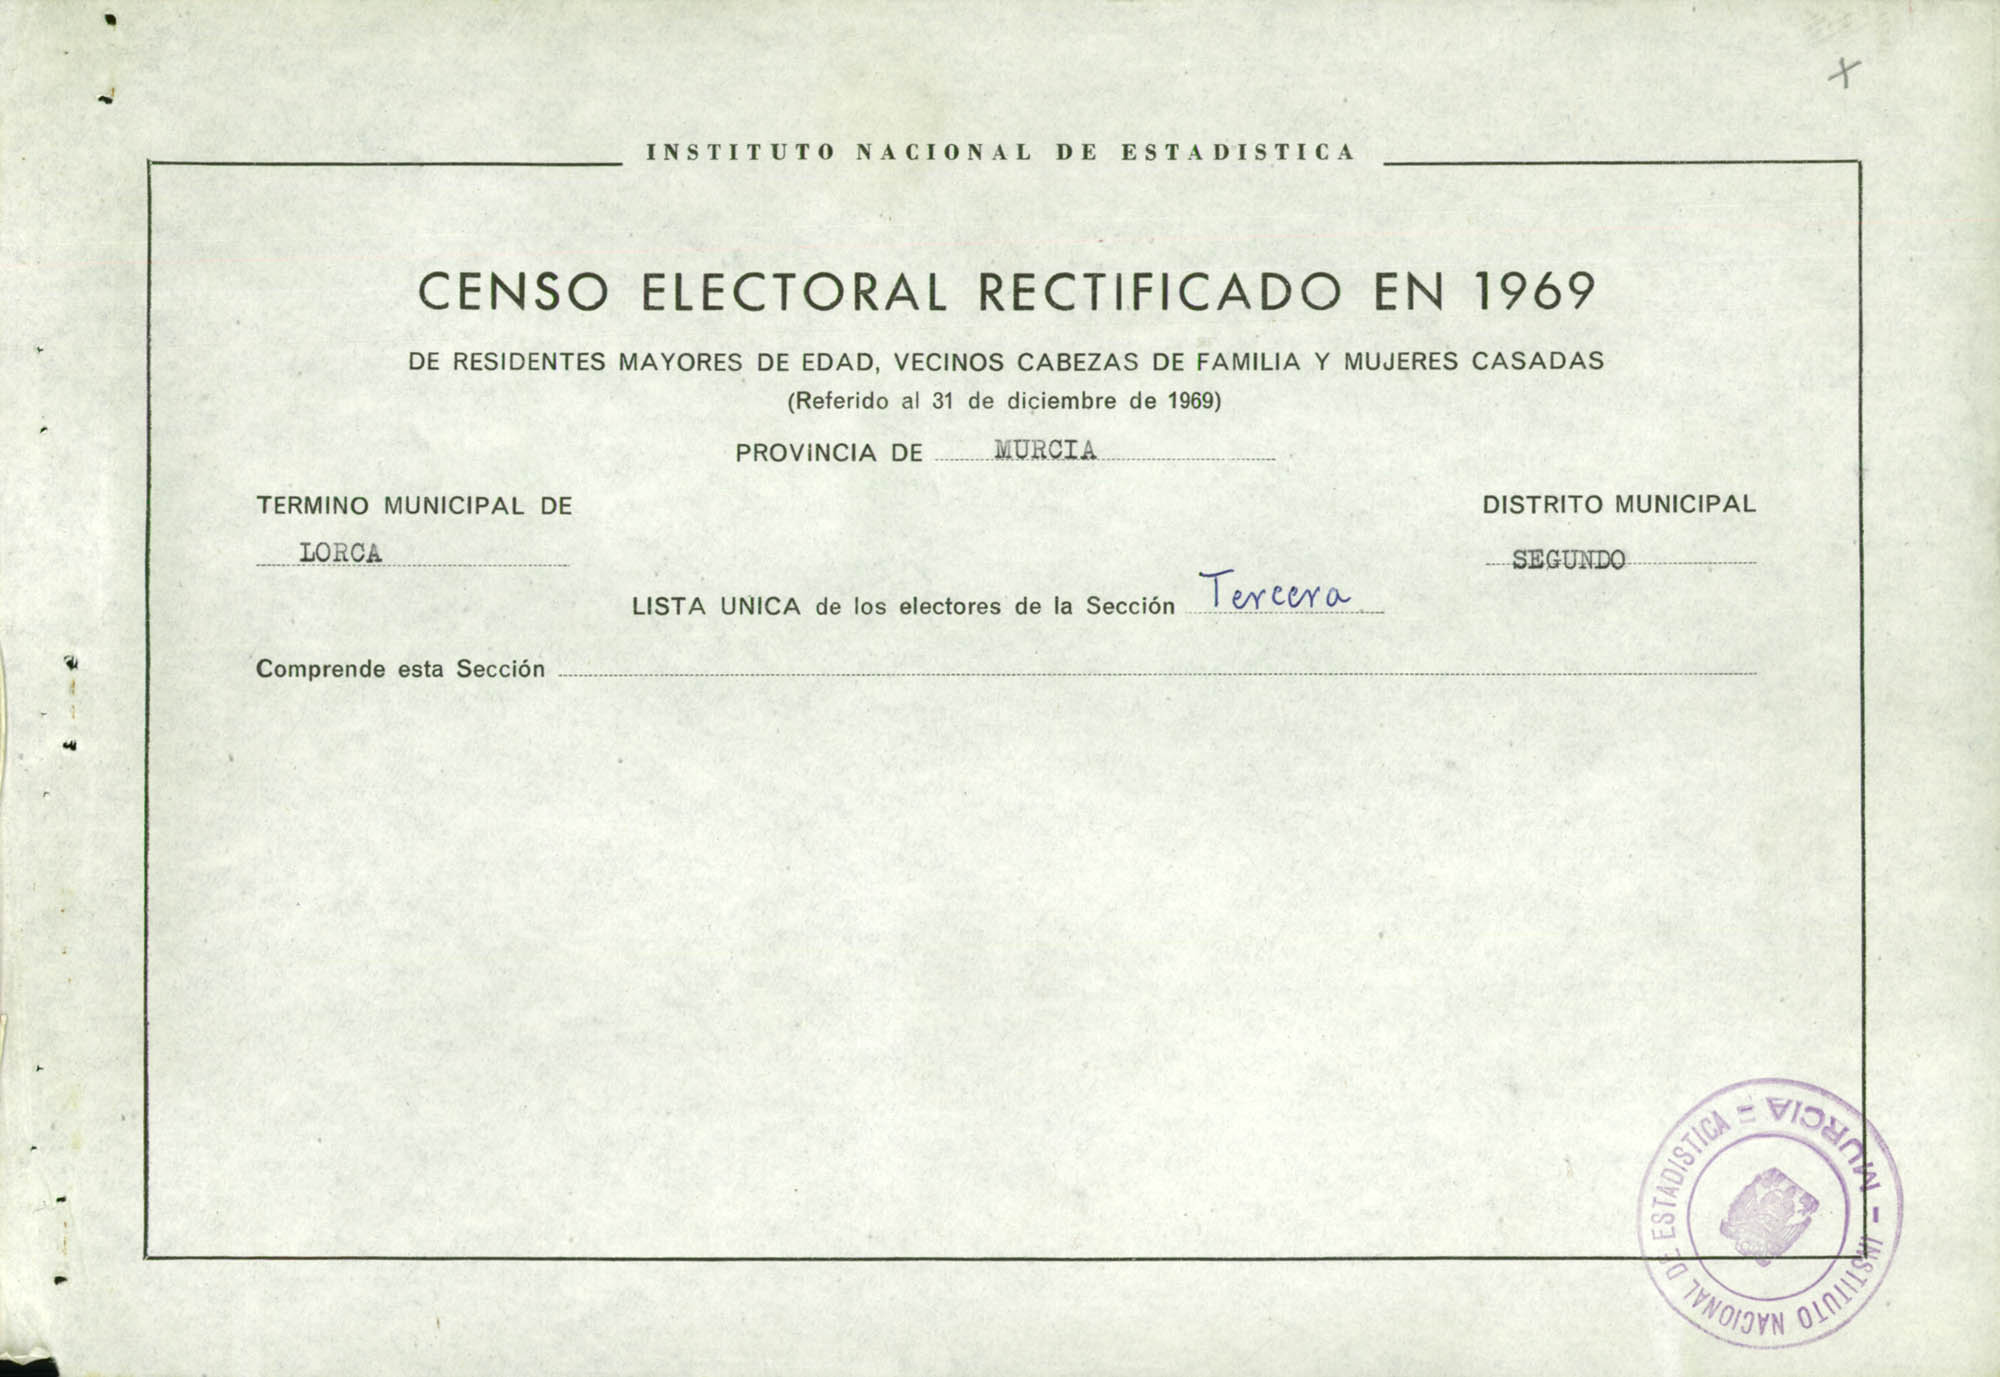 Censo electoral rectificado en 1969: listas definitivas de Lorca, Distrito 2º, sección 3ª.